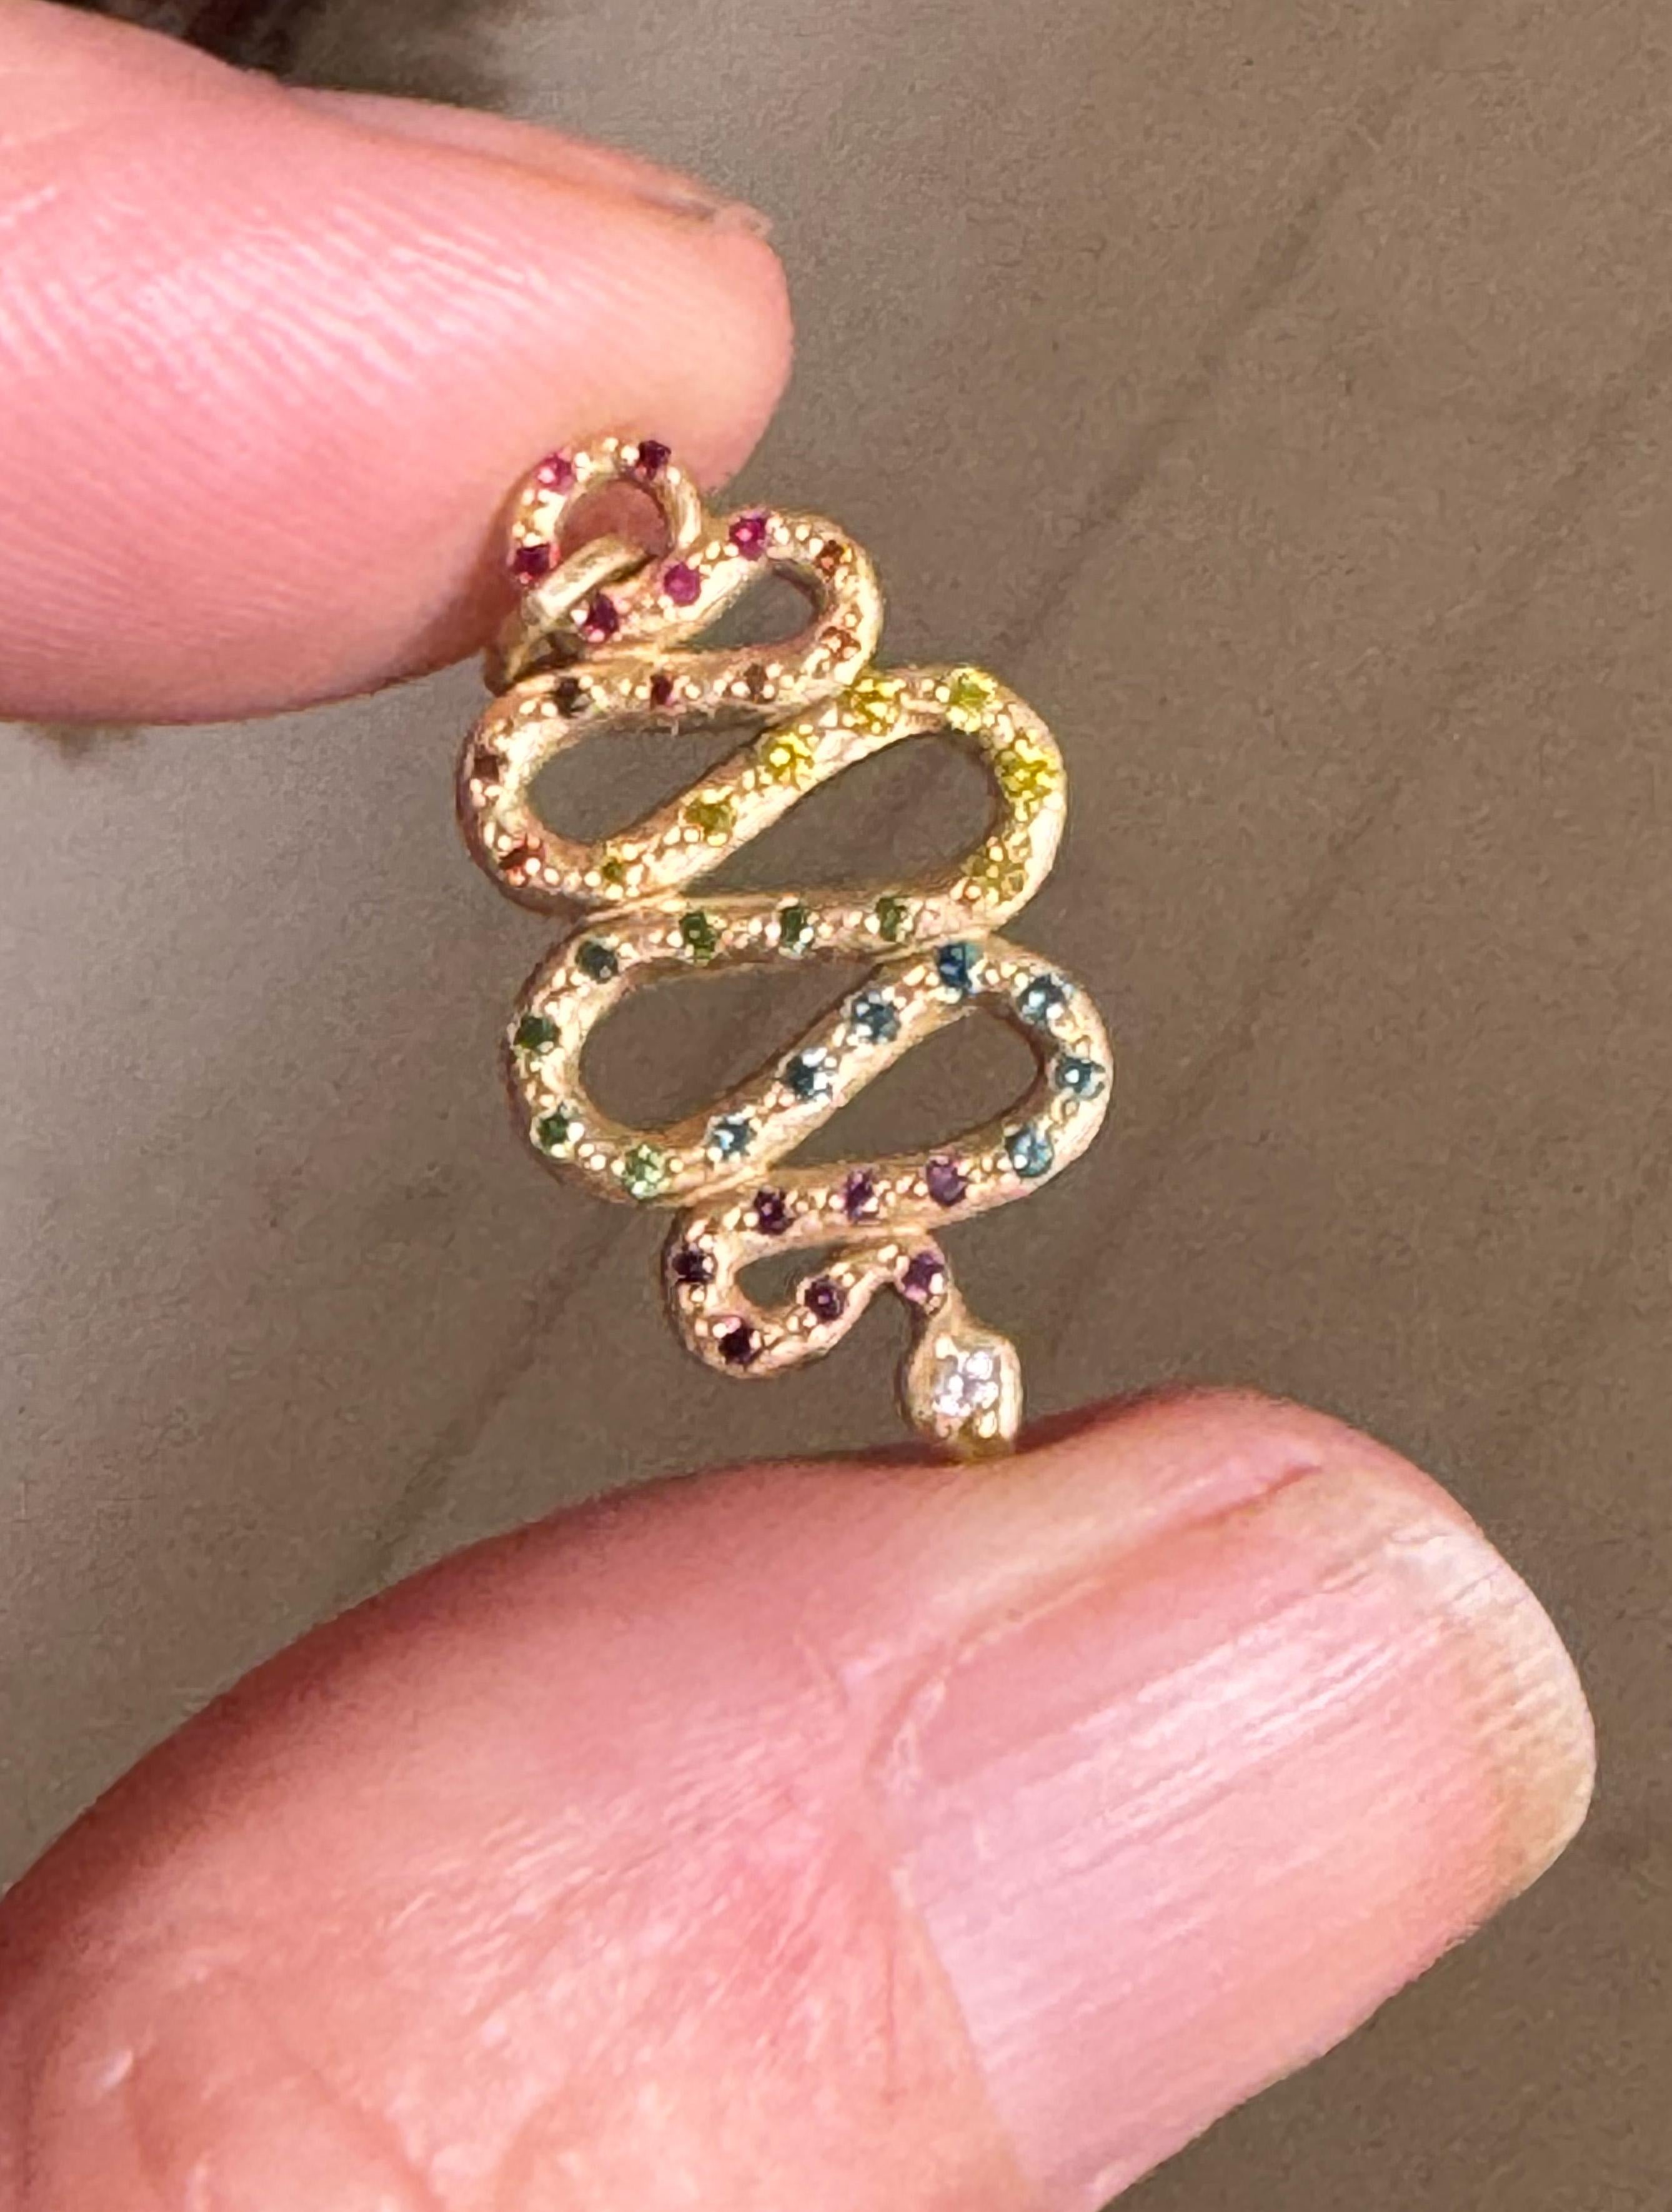 Das Rainbow Serpent Amulett ist aus 18 Karat Fairtrade Gold und regenbogenfarbenen Diamanten und Rubinen gefertigt.  Dies ist die Miniversion des Originals.

Seit 7 Jahren bin ich während der Zeremonien, die von einem indigenen Stammesältesten aus